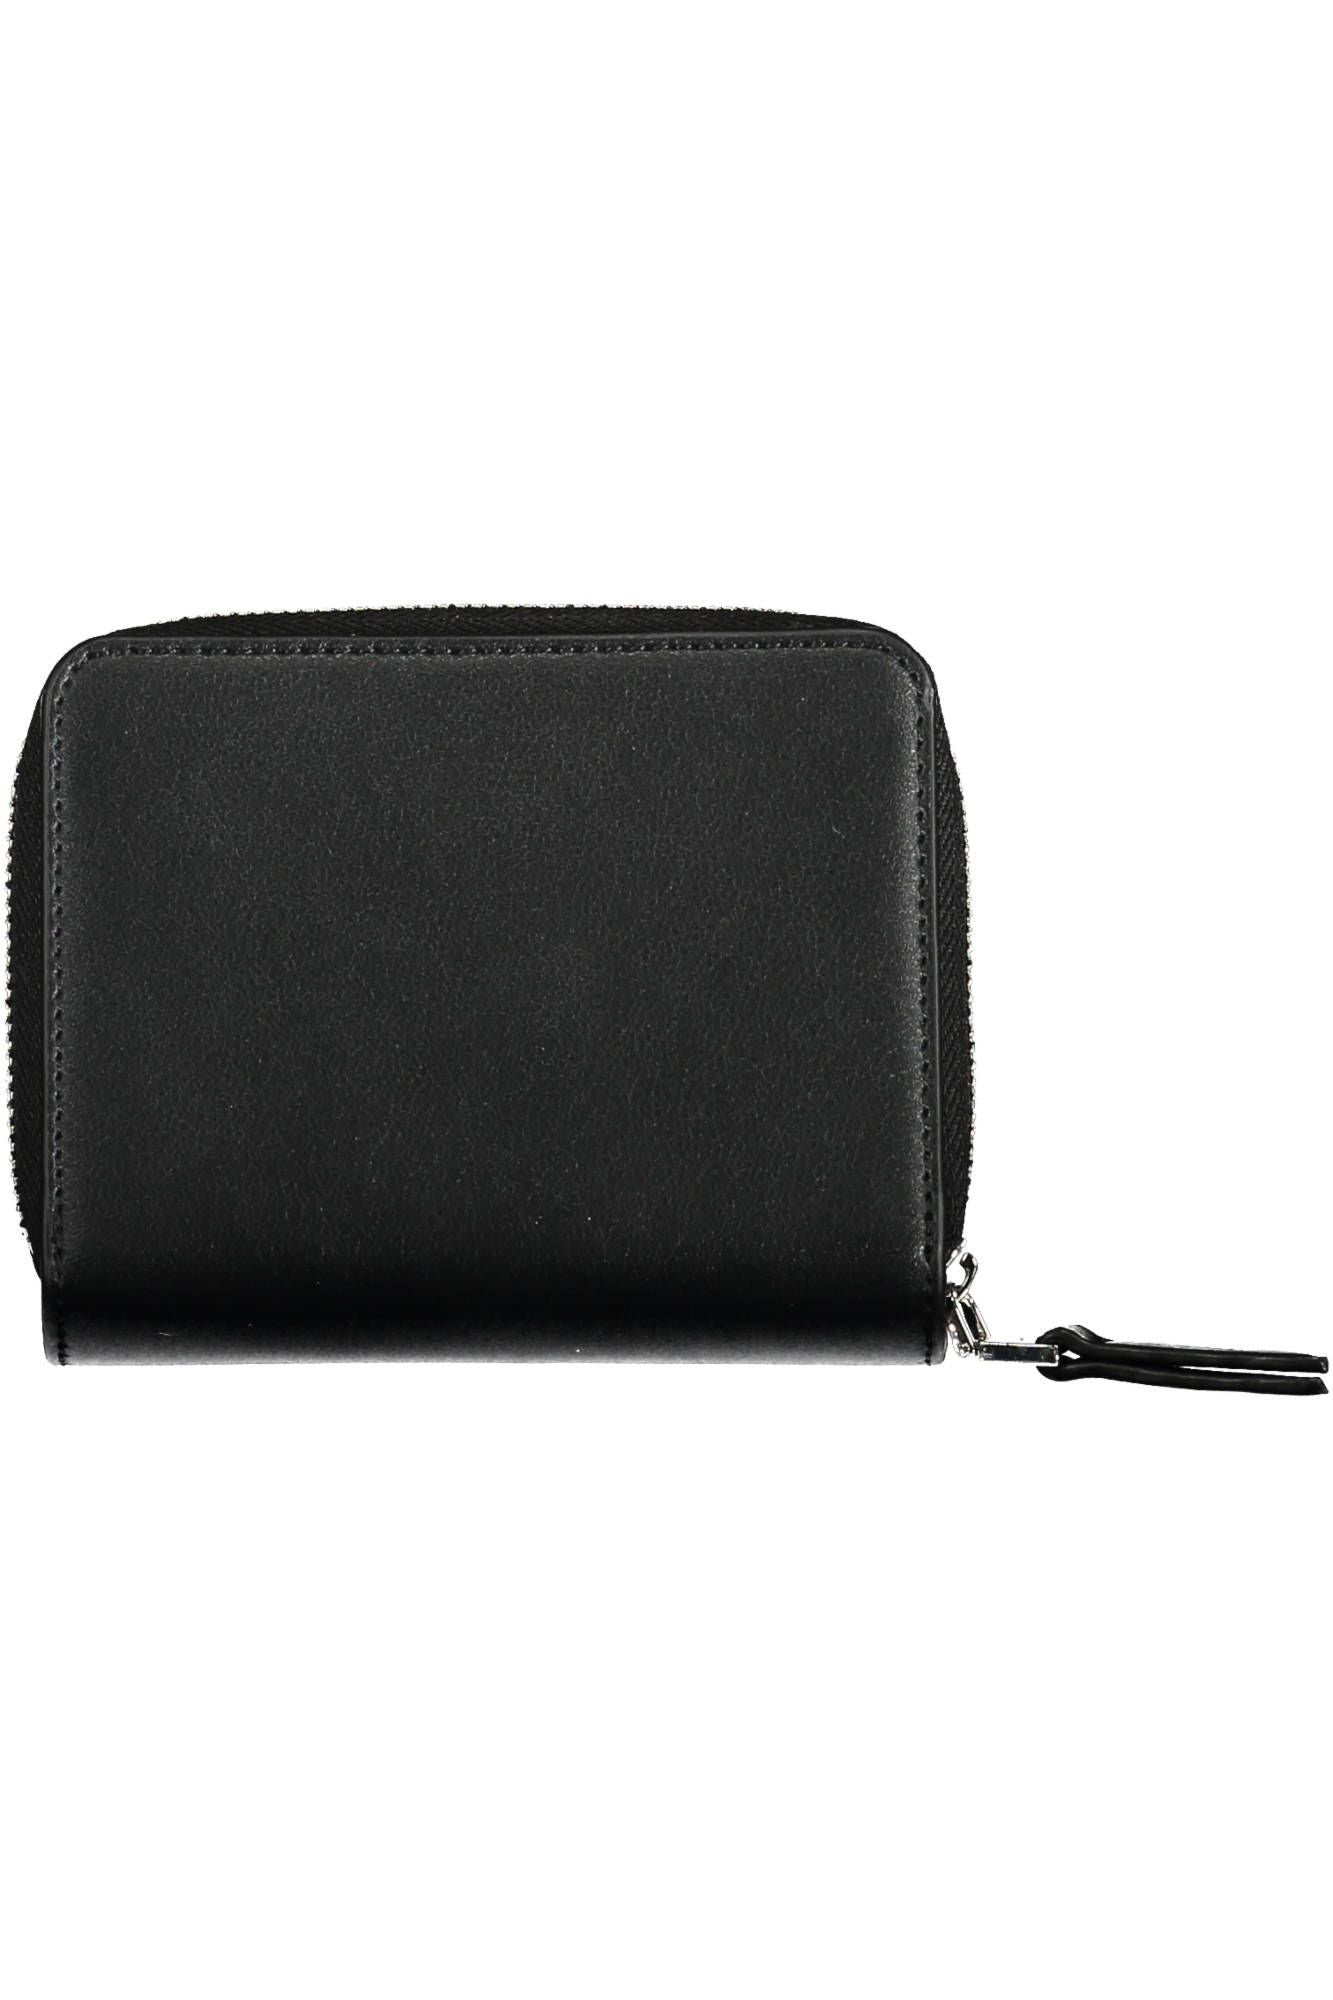 Elegant Zip Wallet with Sleek Card Spaces